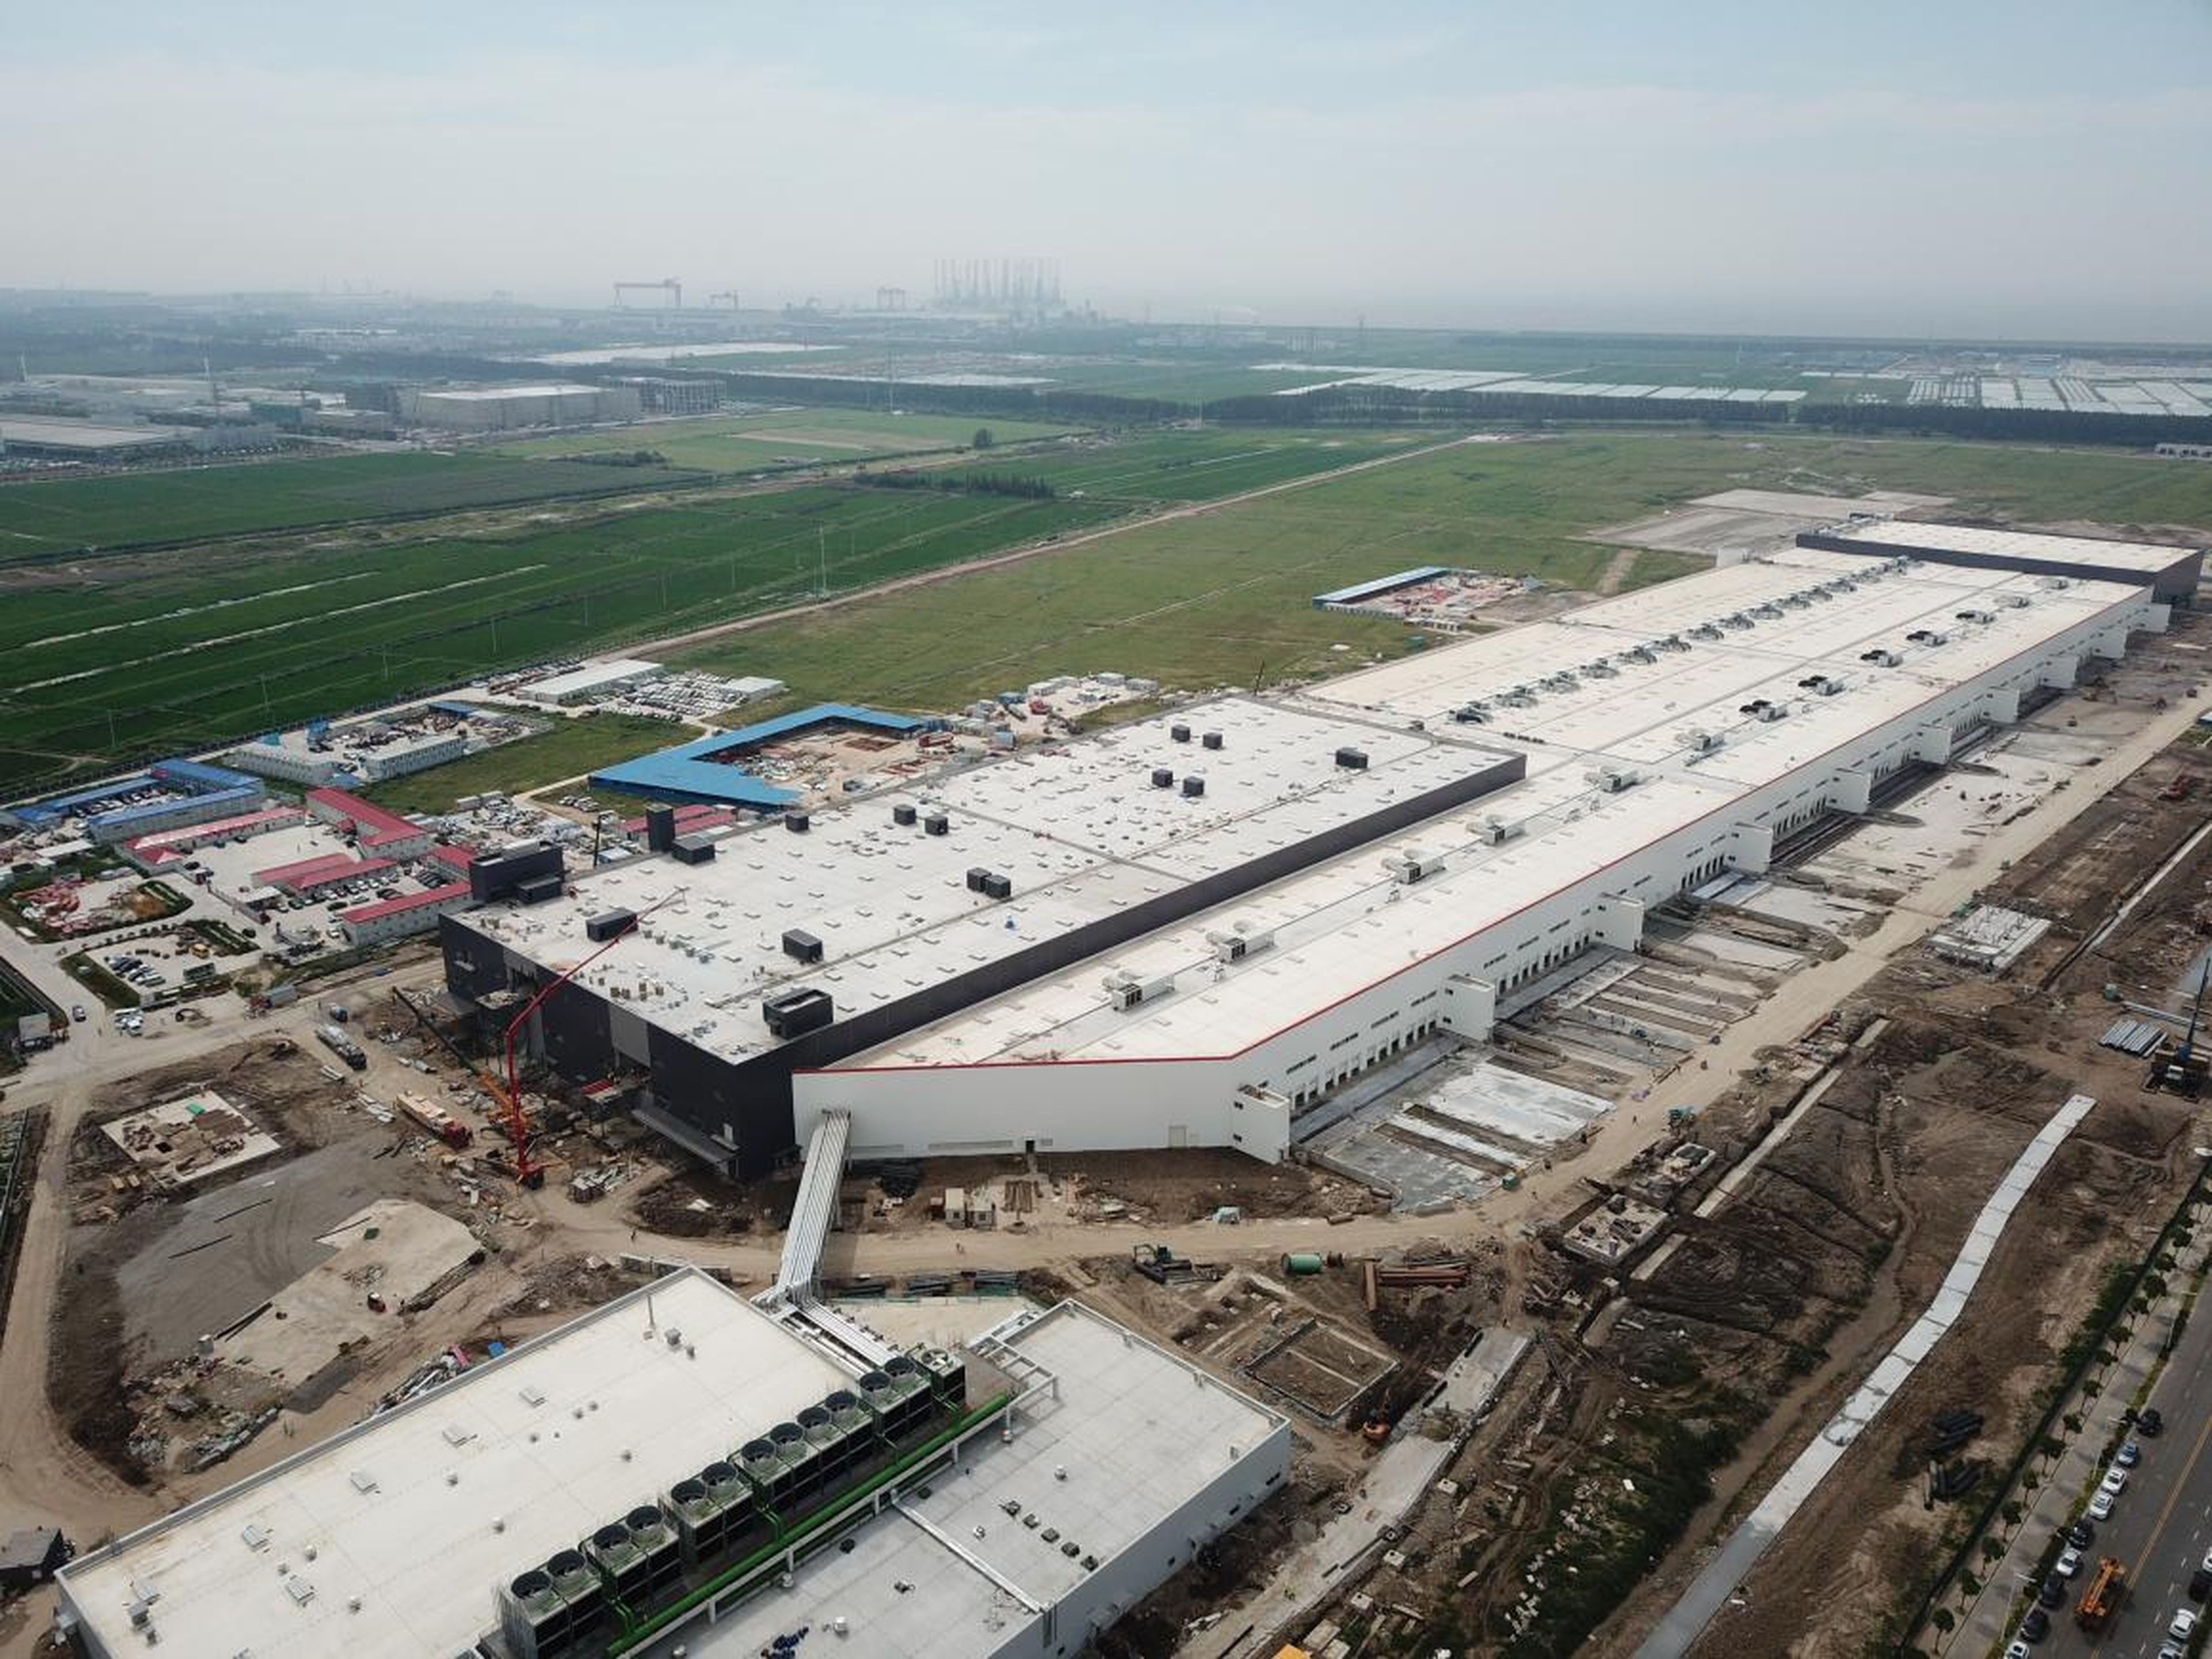 La fábrica de Tesla estaba casi terminada en agosto cuando se tomó esta foto. Algunos informes indican que la compañía podría comenzar la producción allí en el cuarto trimestre de 2019.